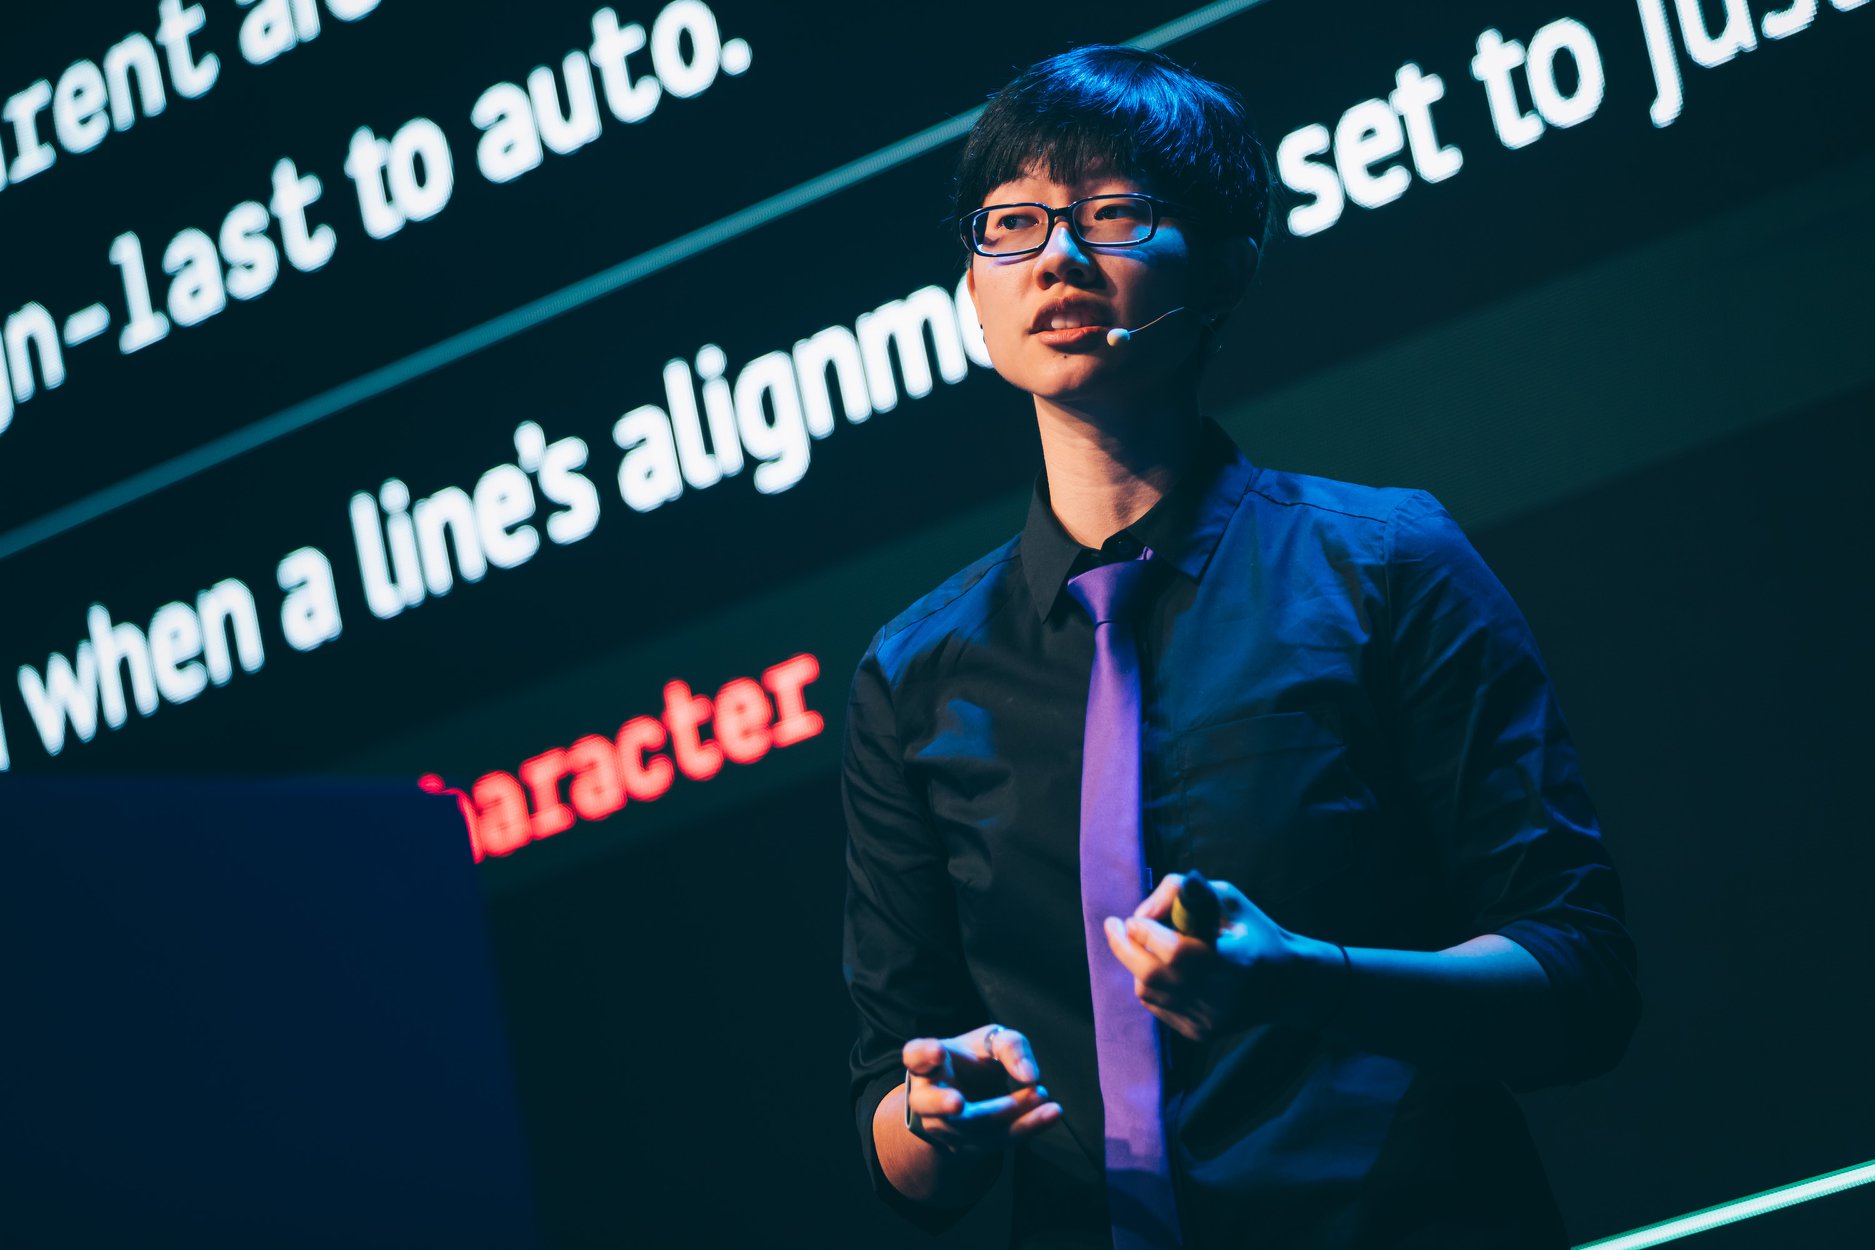 Chen Hui Jing hablando en un escenario frente a una pantalla grande en la que se muestran diapositivas.